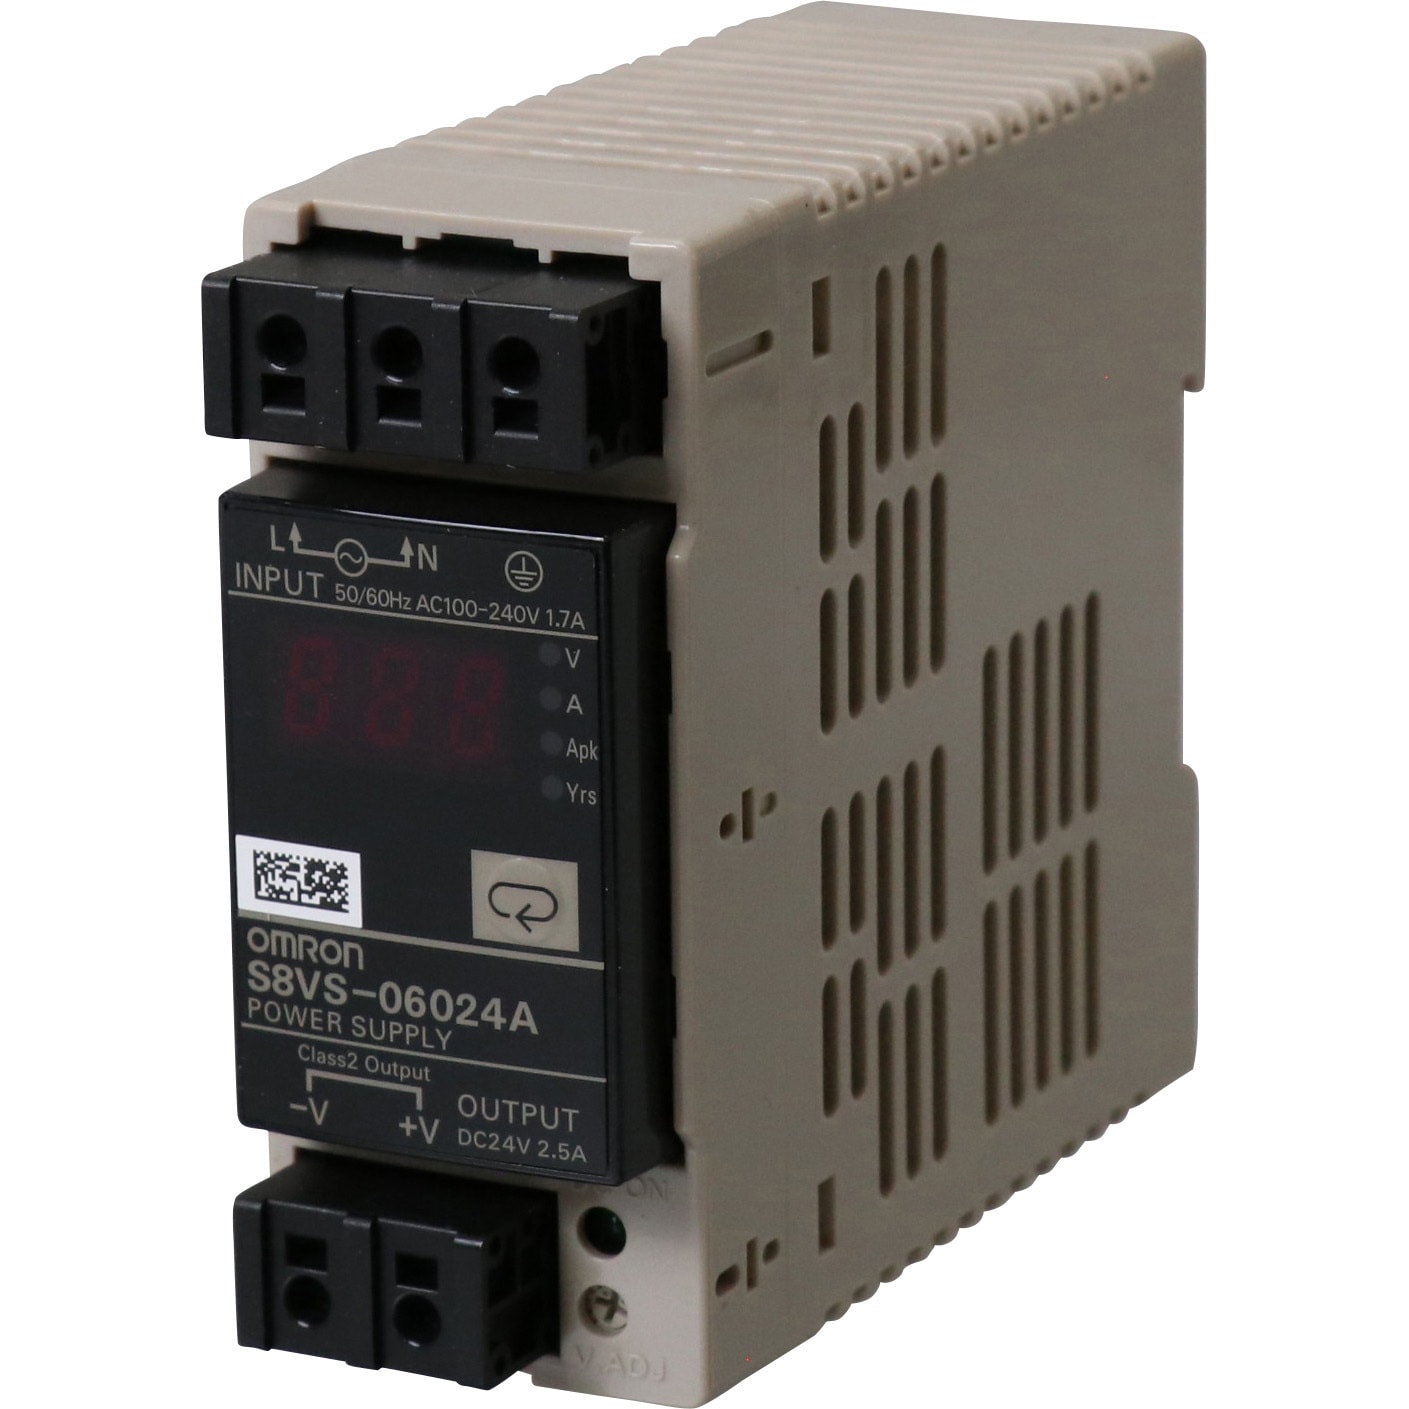 OMRON(オムロン) スイッチング パワーサプライ S8VSタイプ S8VS-12024A - 2